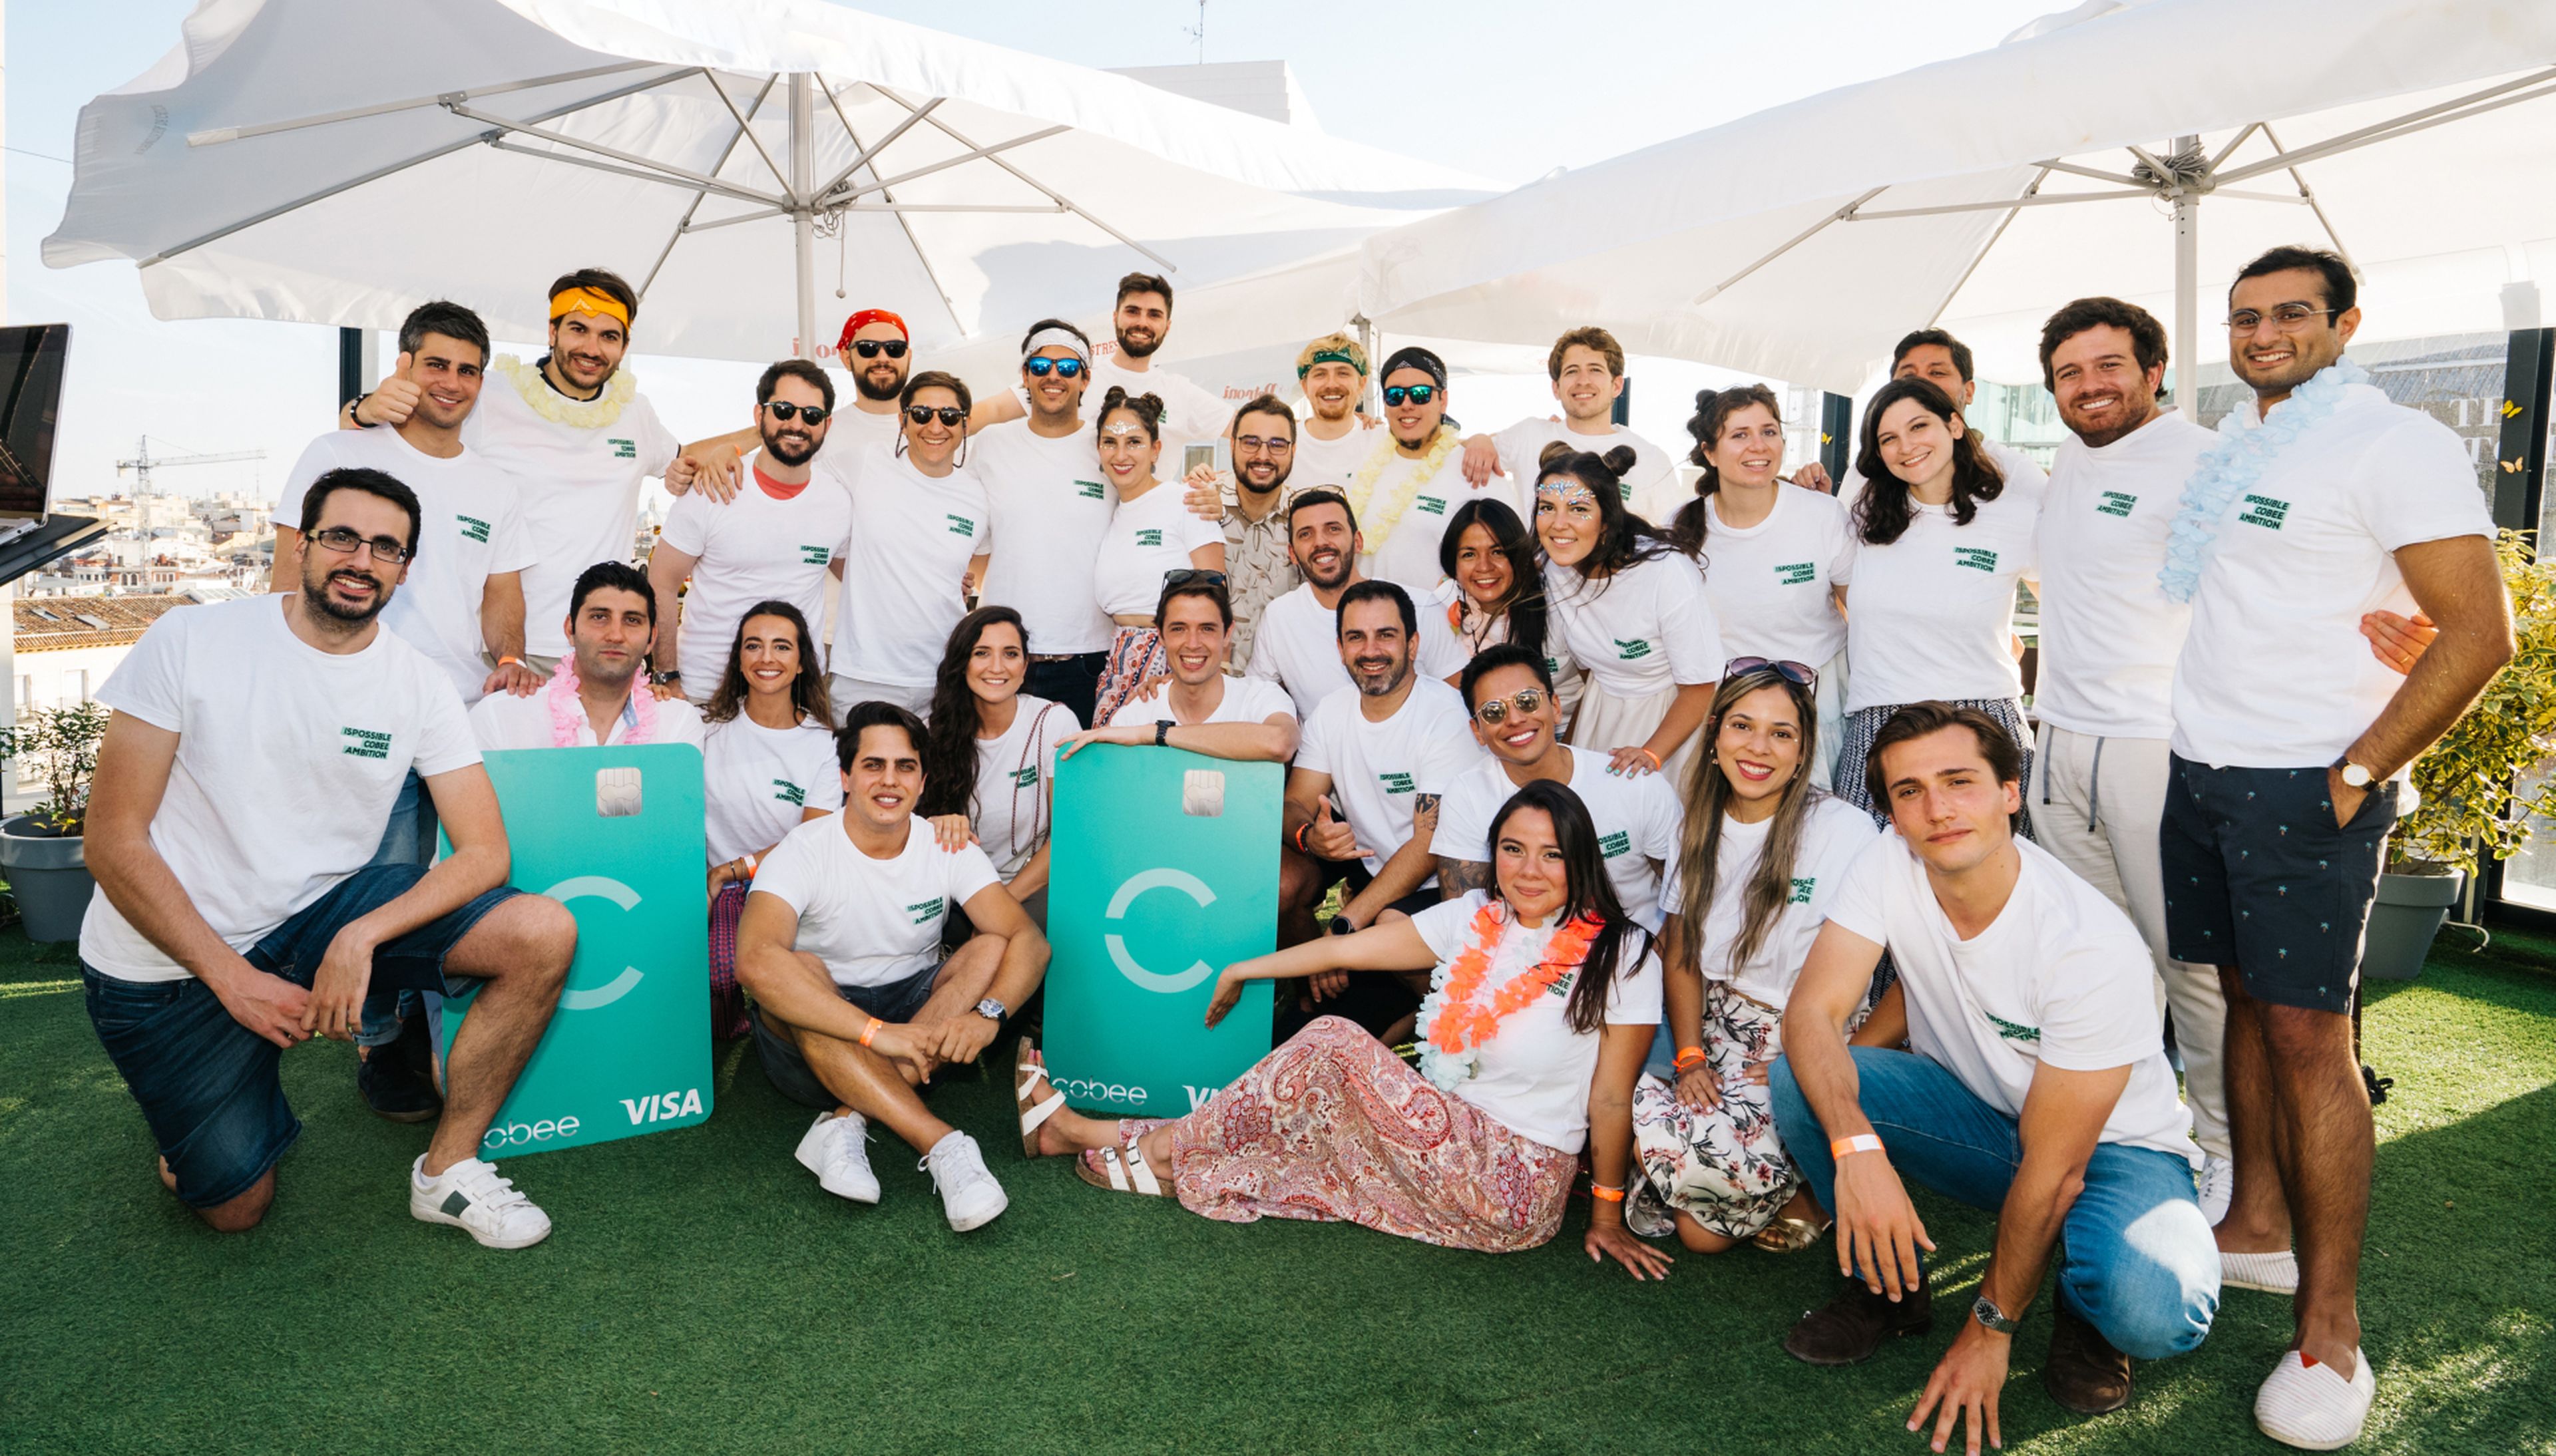 El CEO de Cobee, Borja Aranguren, en el centro de la imagen, junto al resto del equipo de la startup